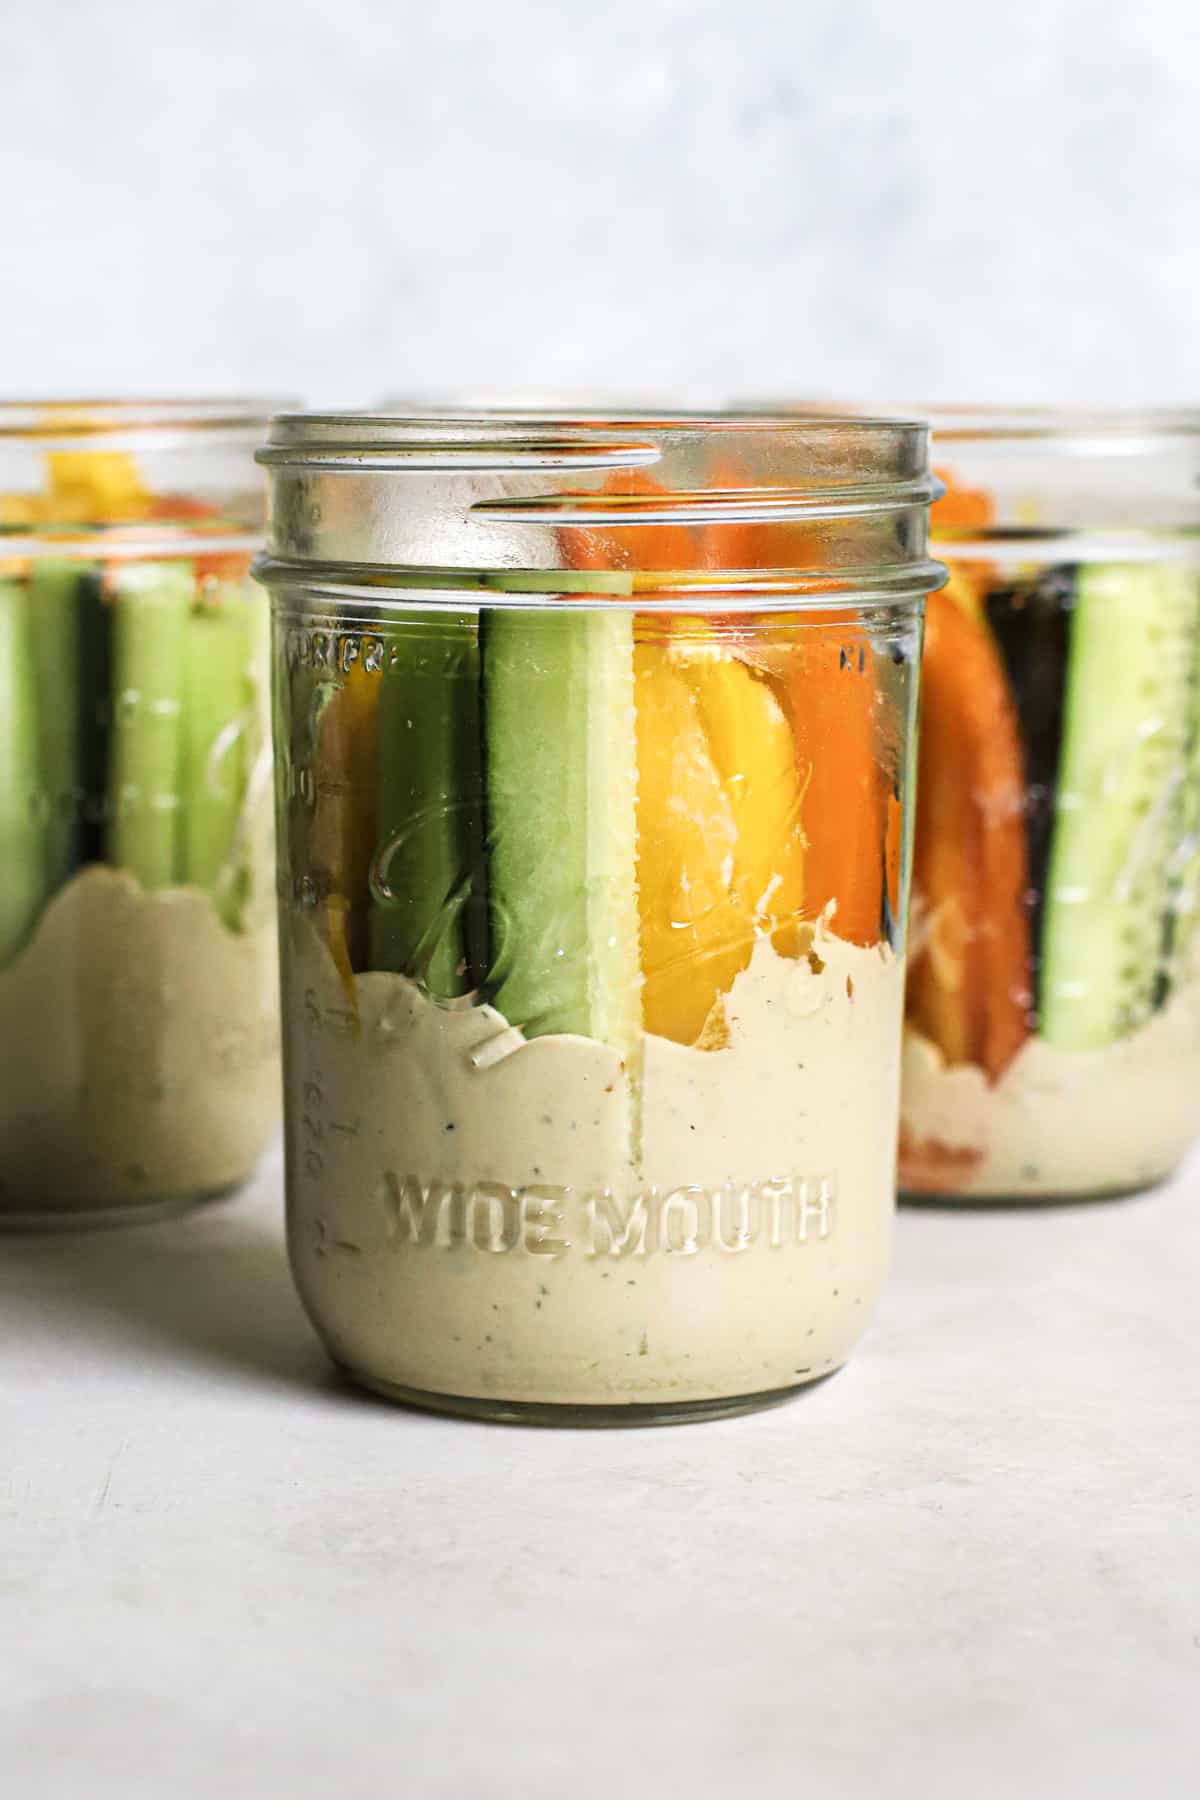 Three hummus and veggie jars on gray and white surface